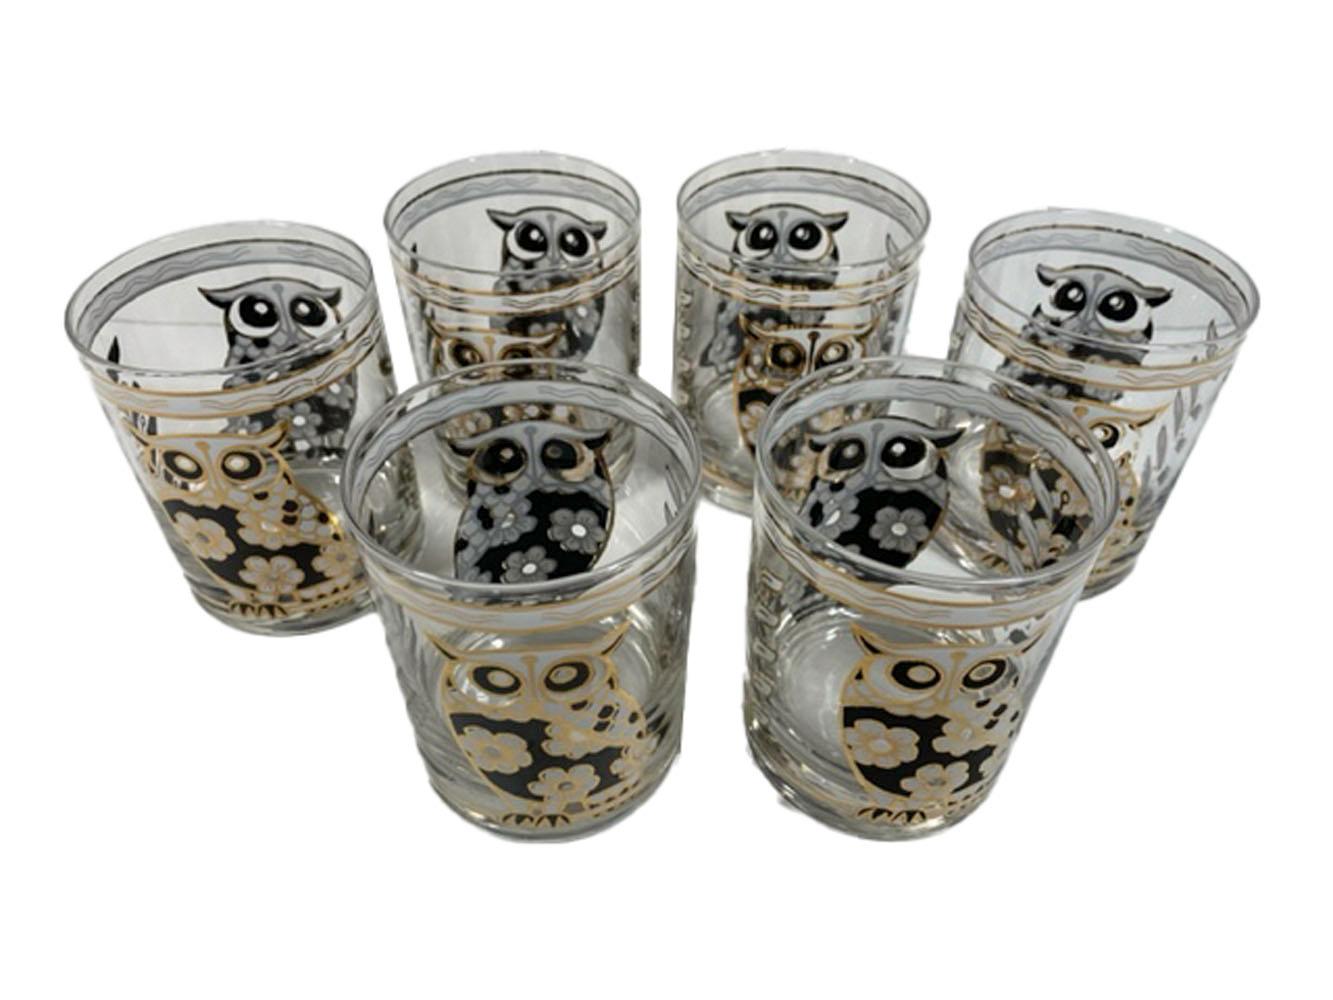 Sechs Vintage-Gläser von Cera Glassware mit schwarzer und weißer Emaille und 22-karätigem Golddekor. Jedes Glas mit einer Eule auf der Vorder- und Rückseite, in schwarzer und weißer Emaille mit einem Muster aus Kirschblüten, die ihren Körper bilden